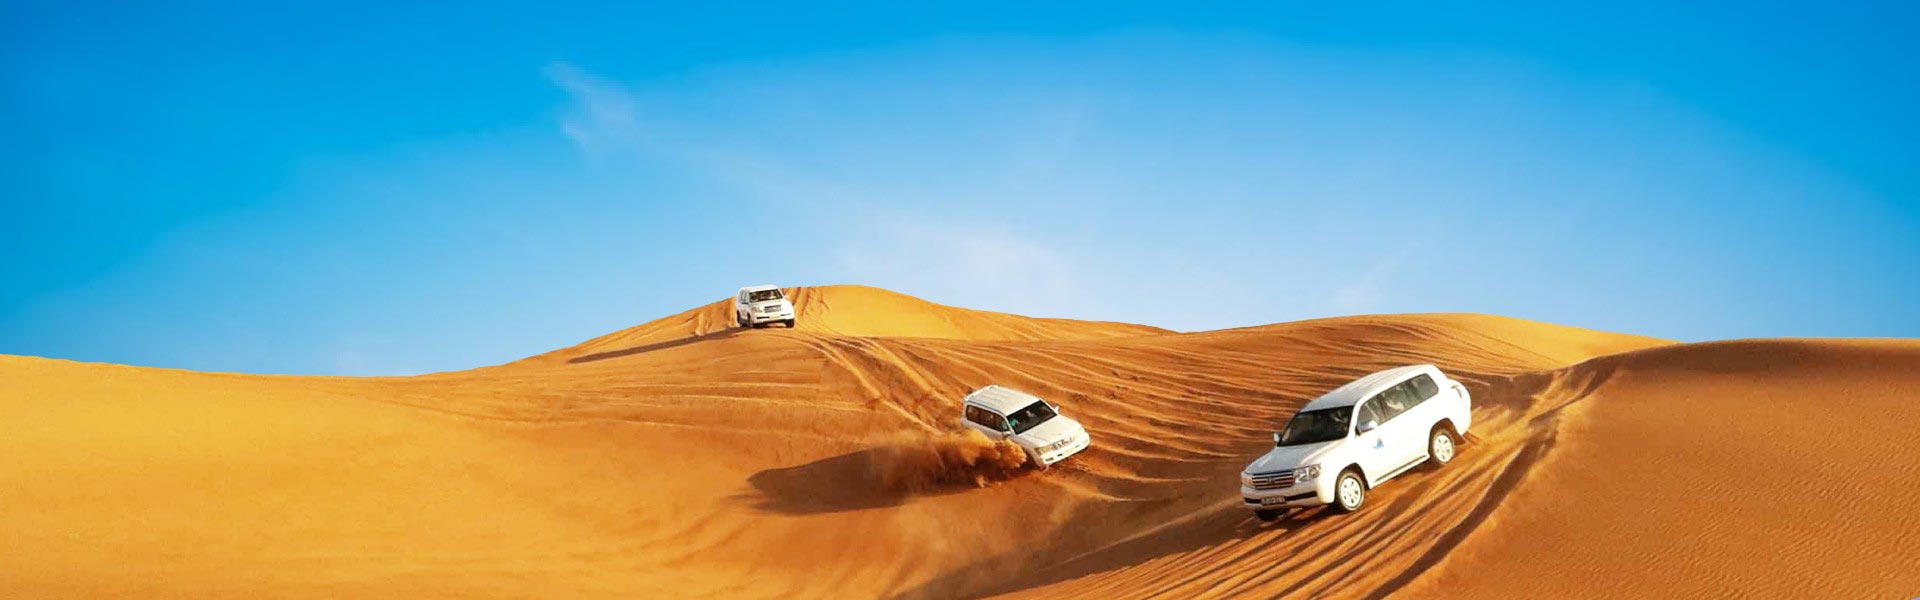 3 white cars in Dubai desert taking tourist for desert safari - Tour Package